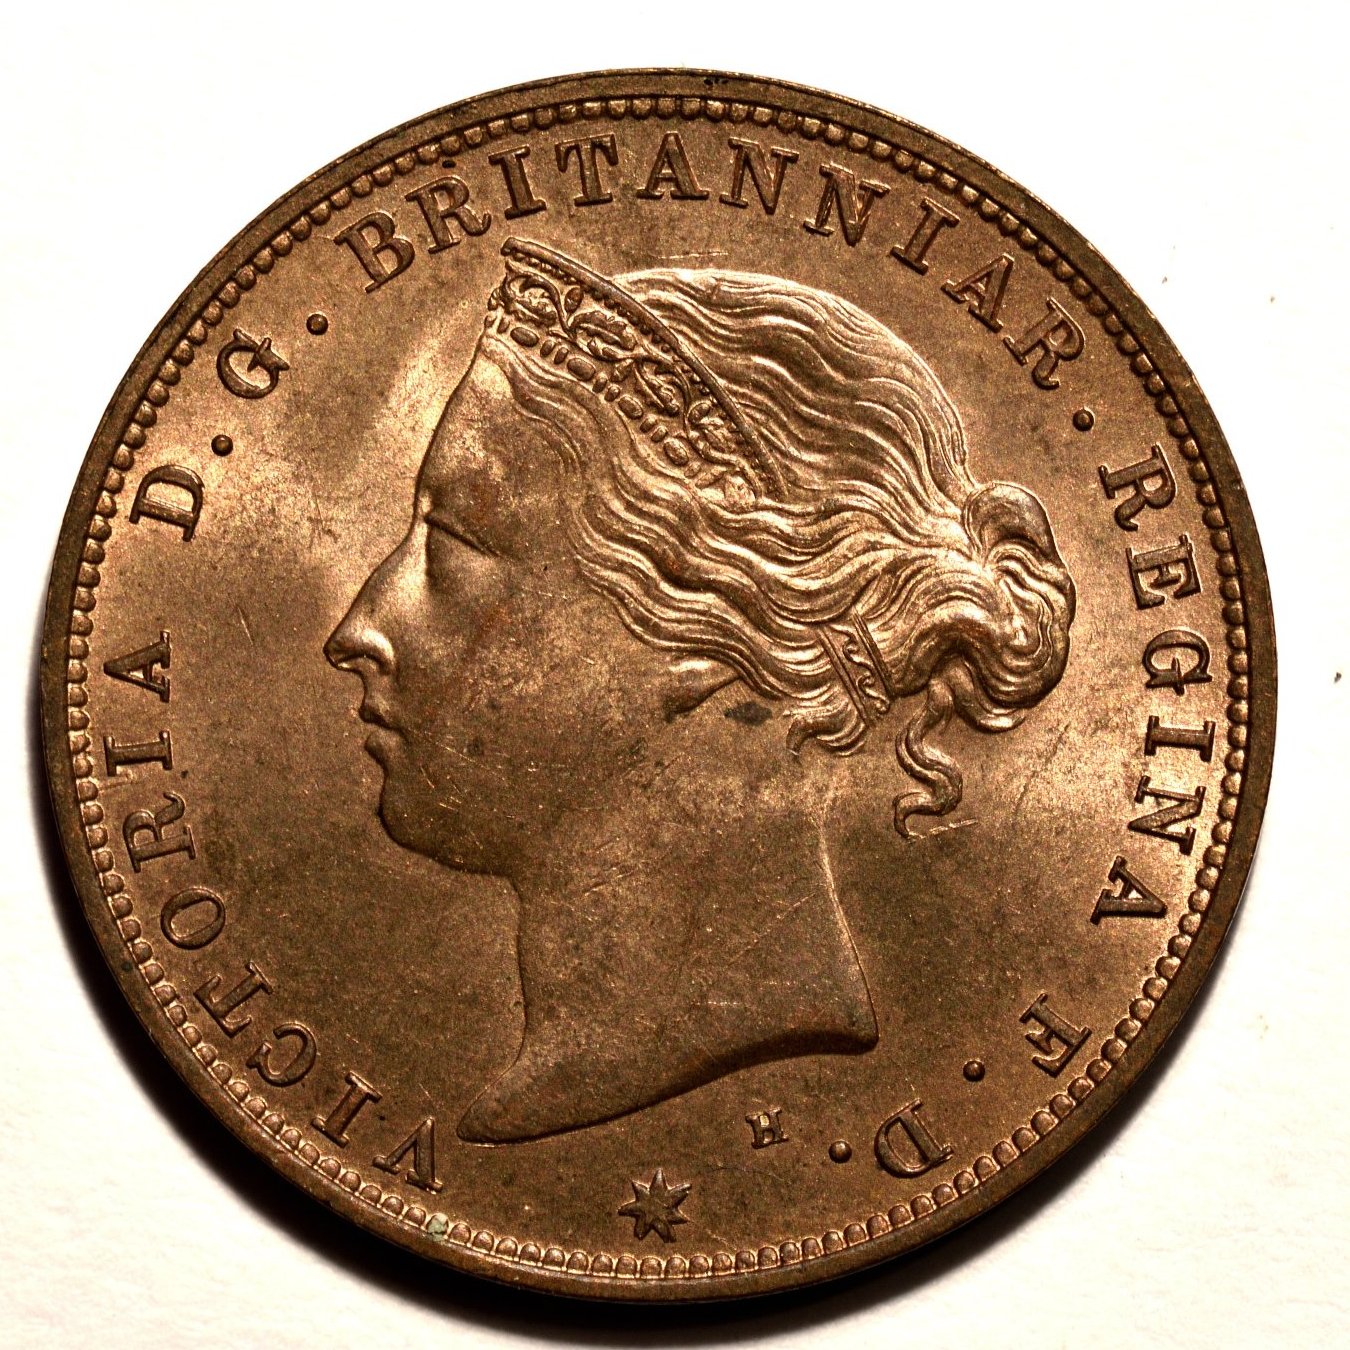 1877 half penny obverse